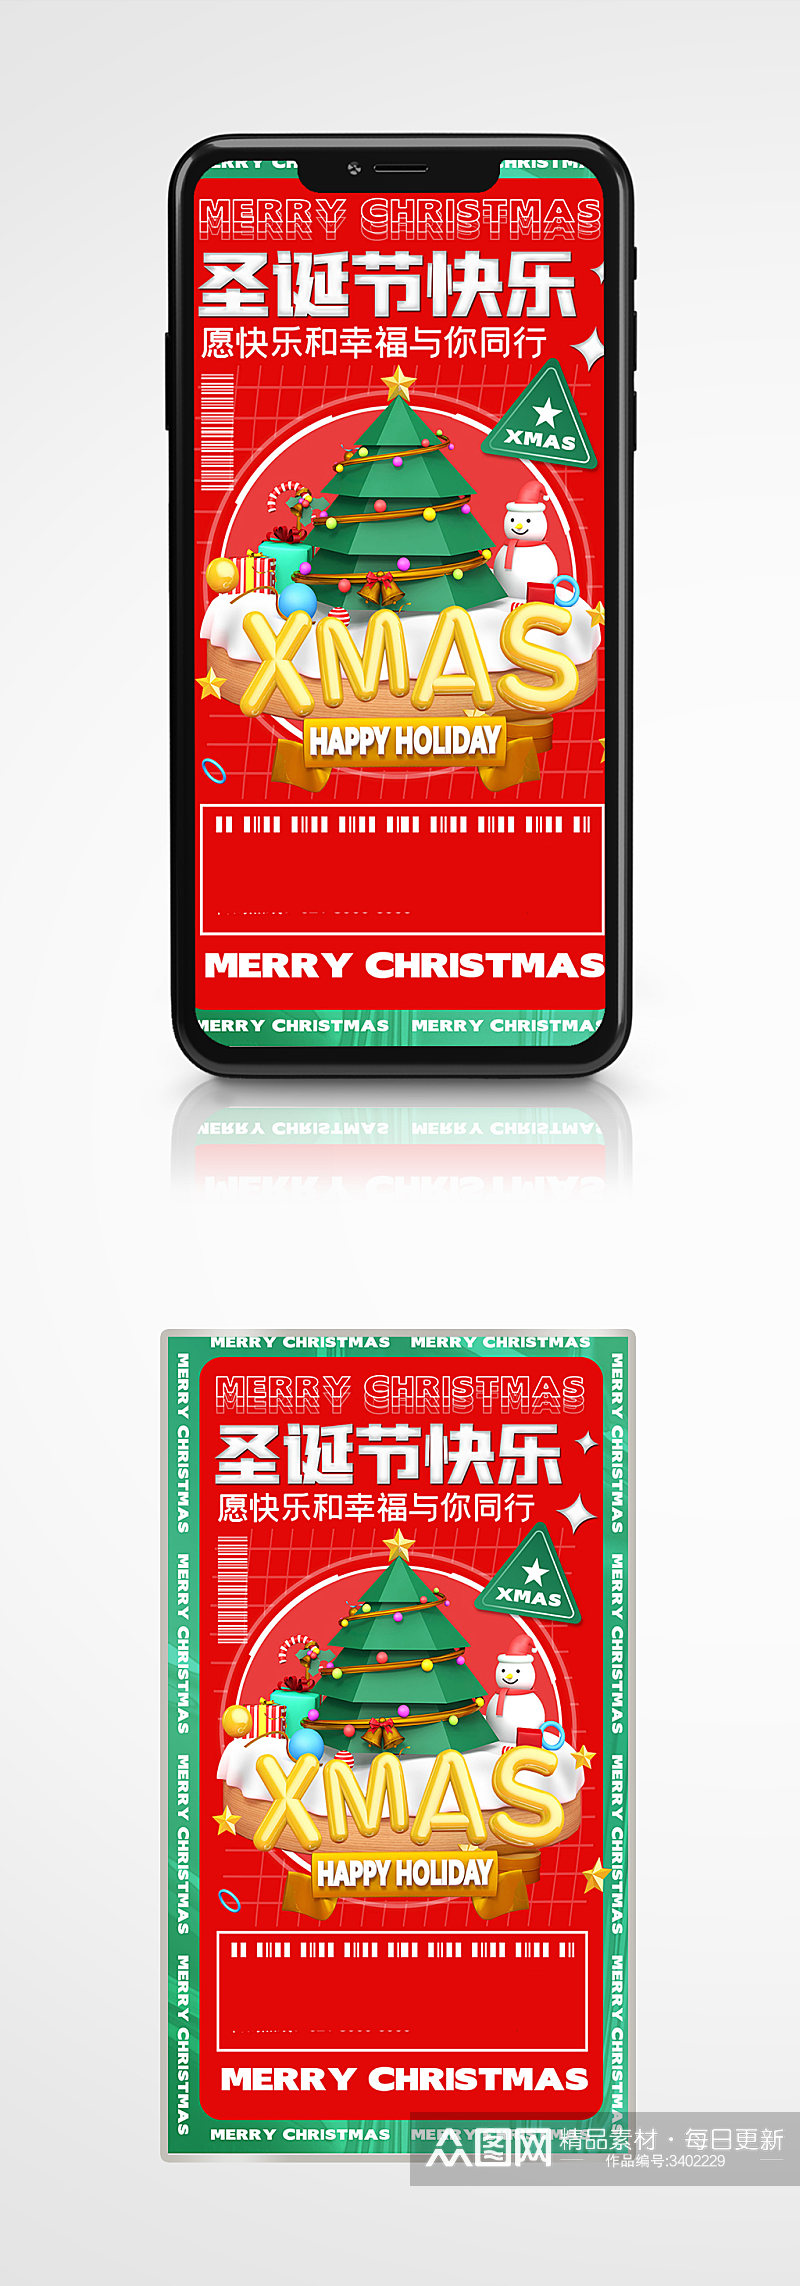 圣诞节节日潮流时尚手机海报卡通素材